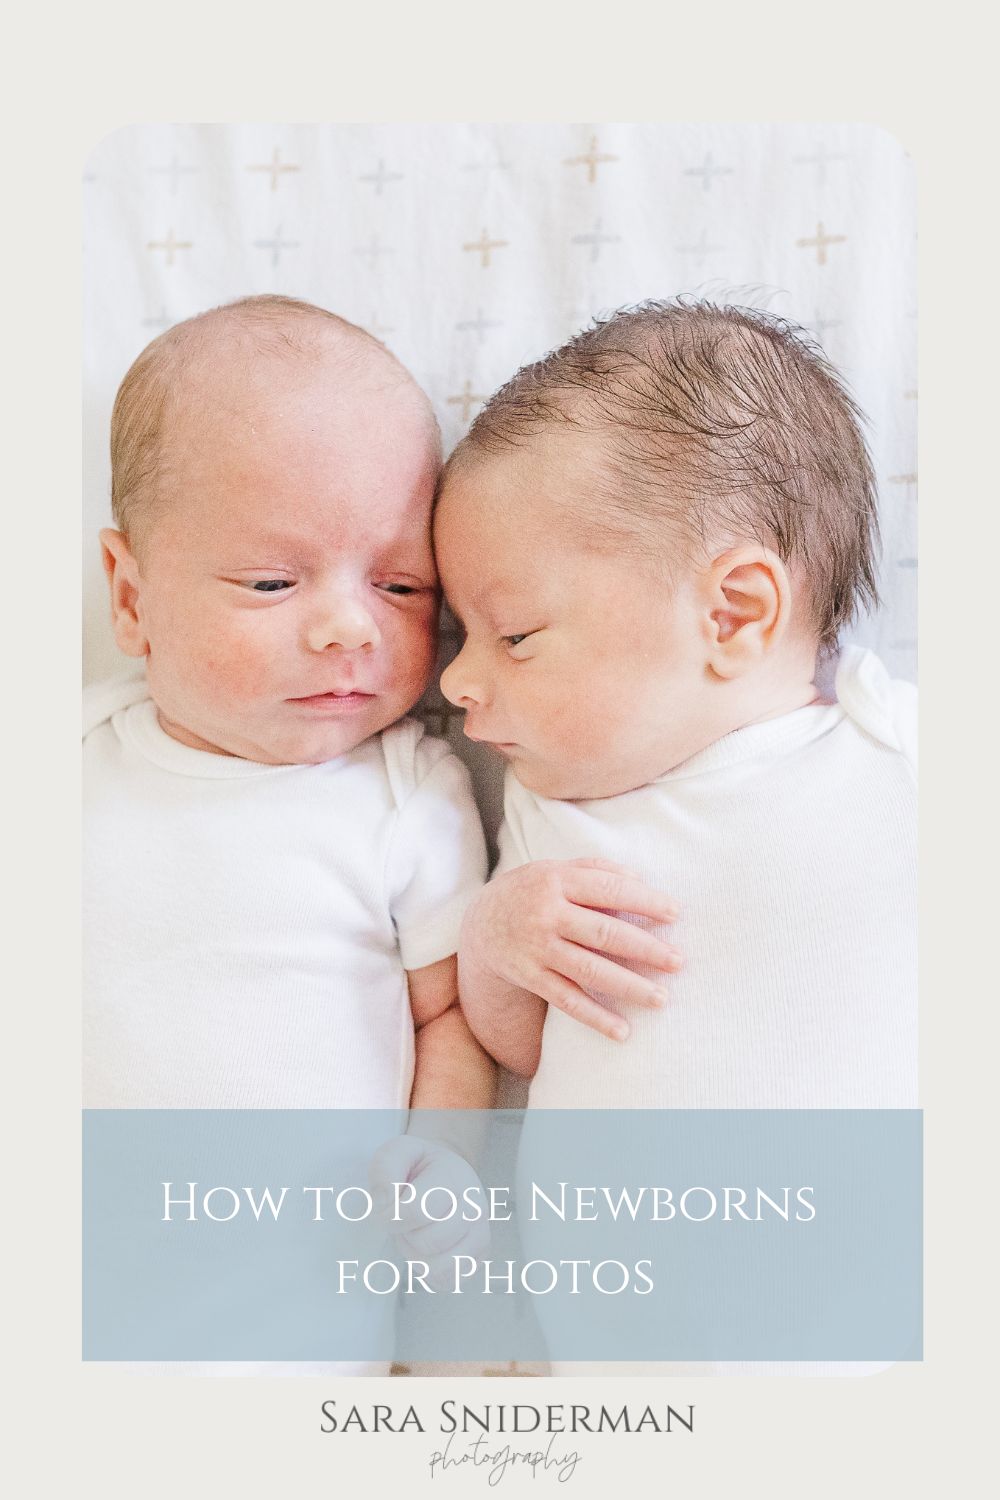 How to Pose Newborns for Photos